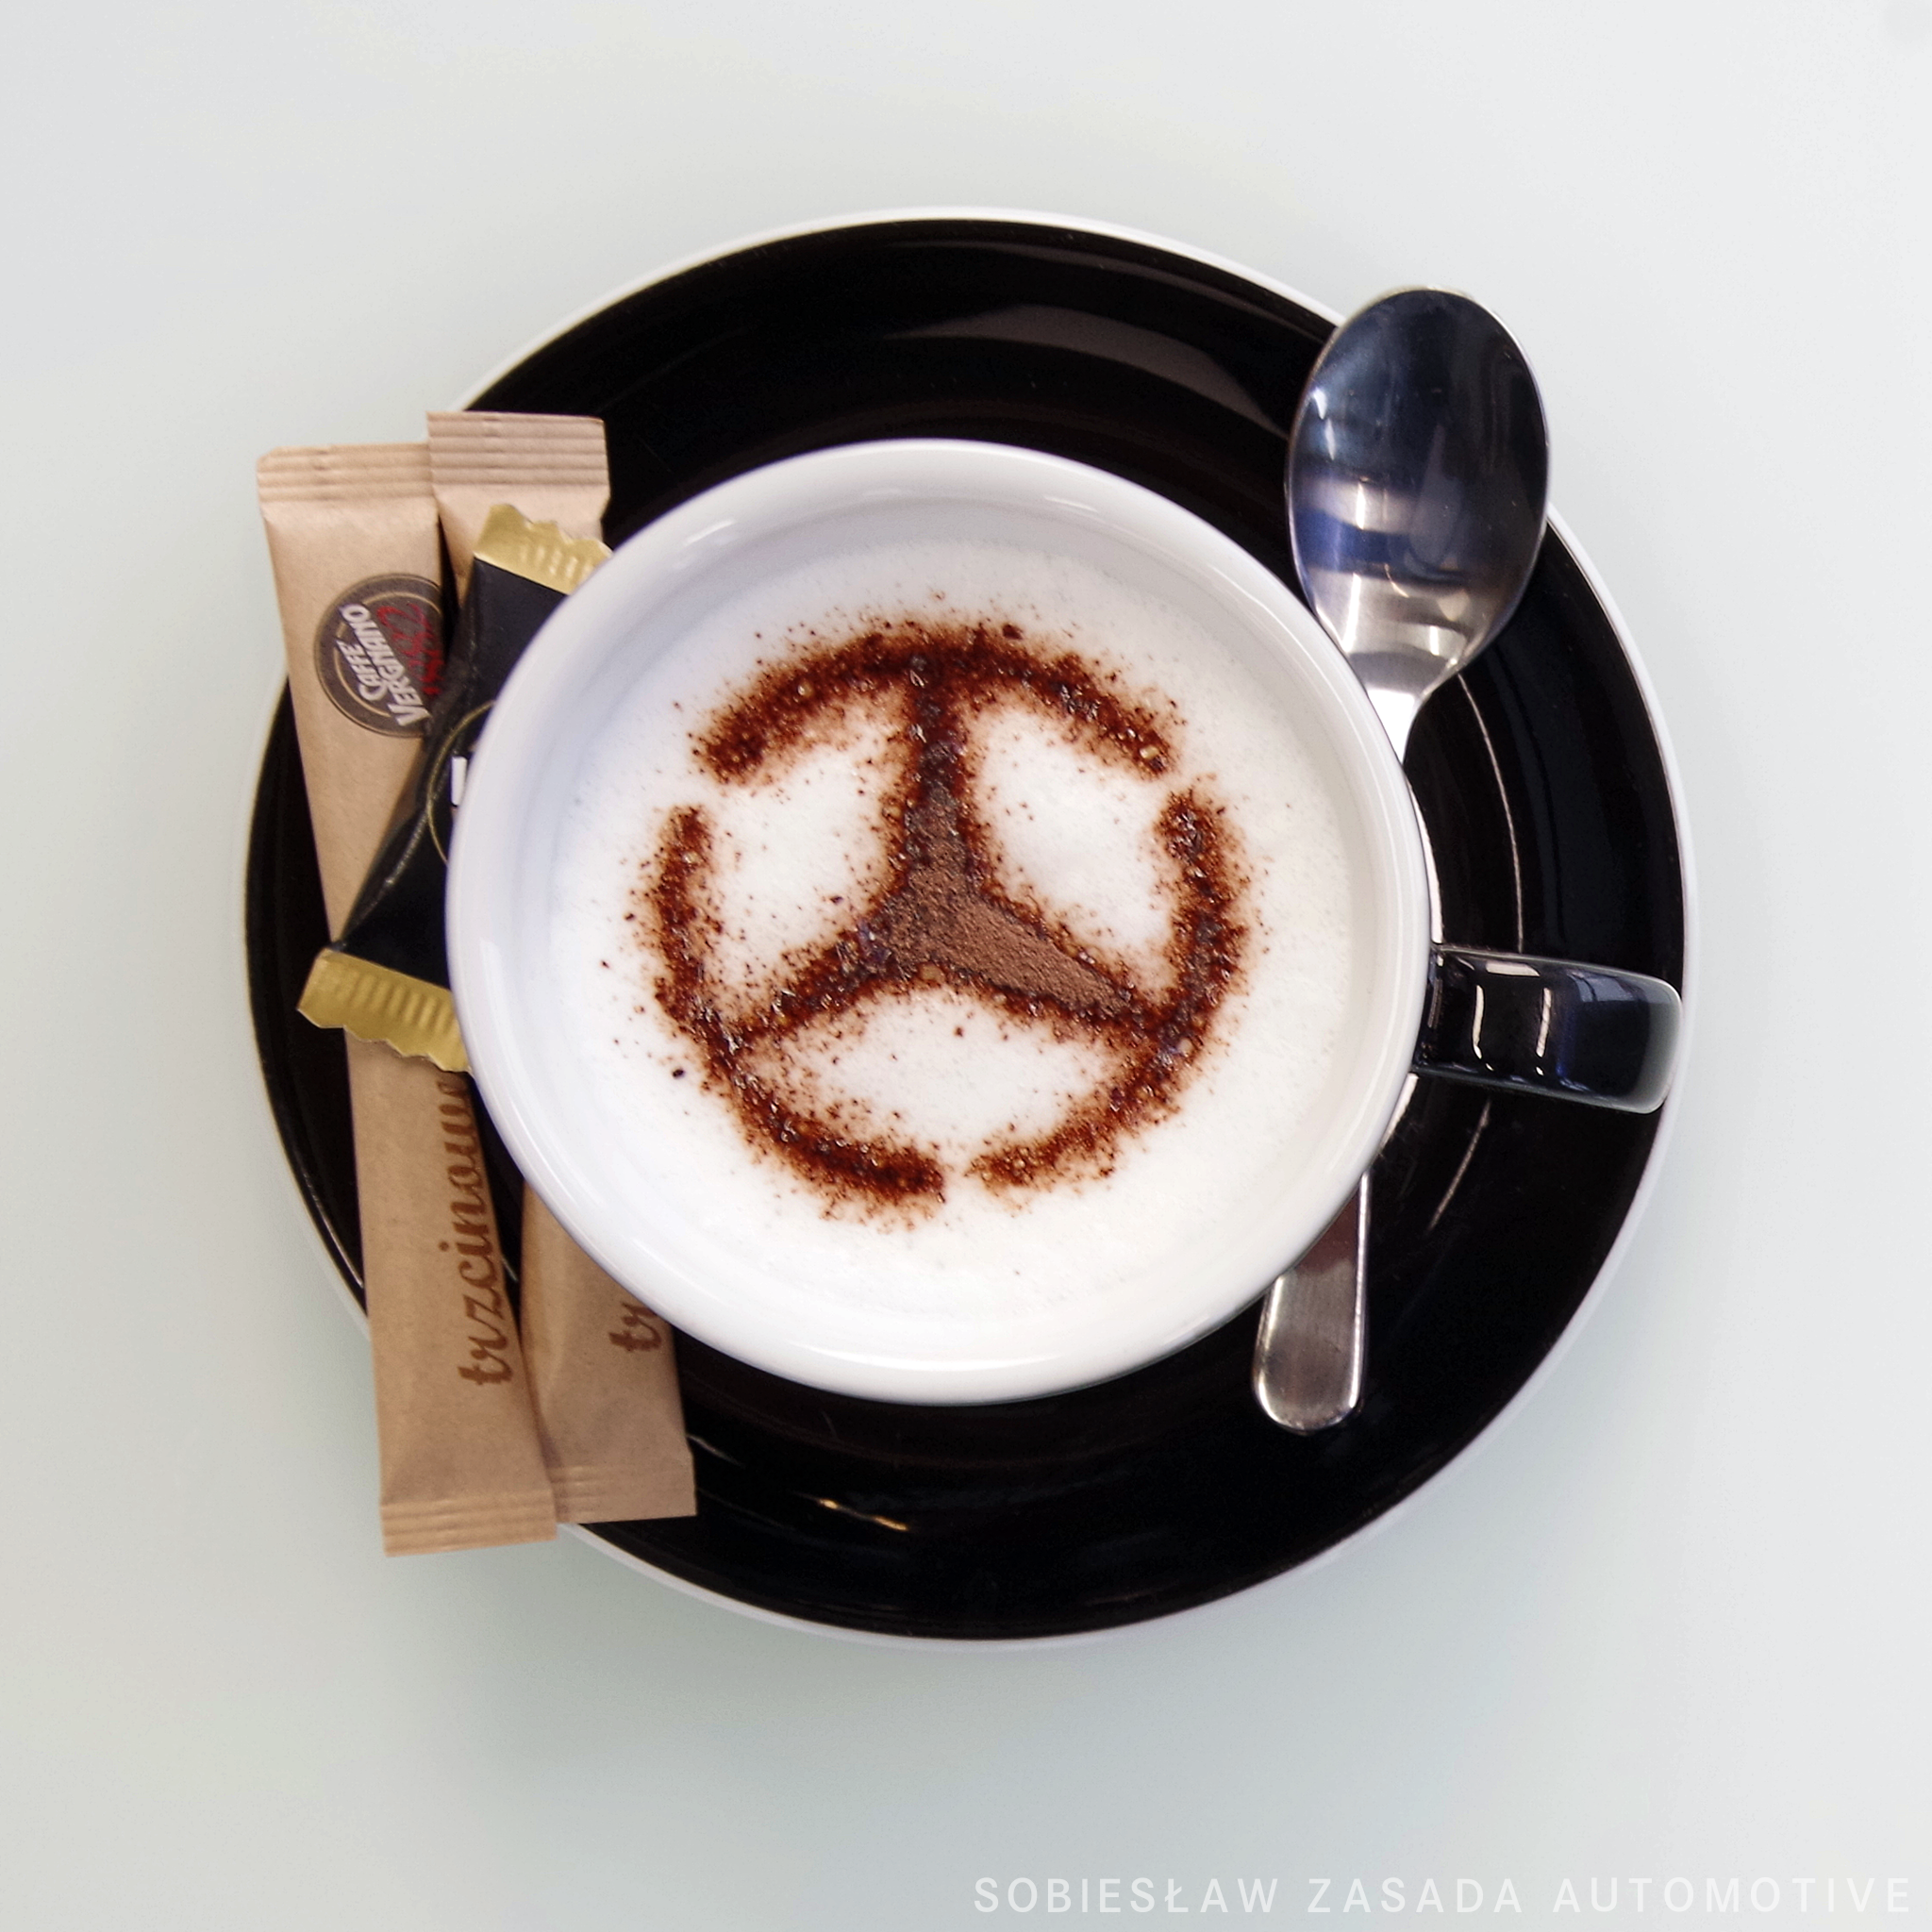 Caffe Vergano w Mercedes-Benz Sobiesław Zasada Automotive